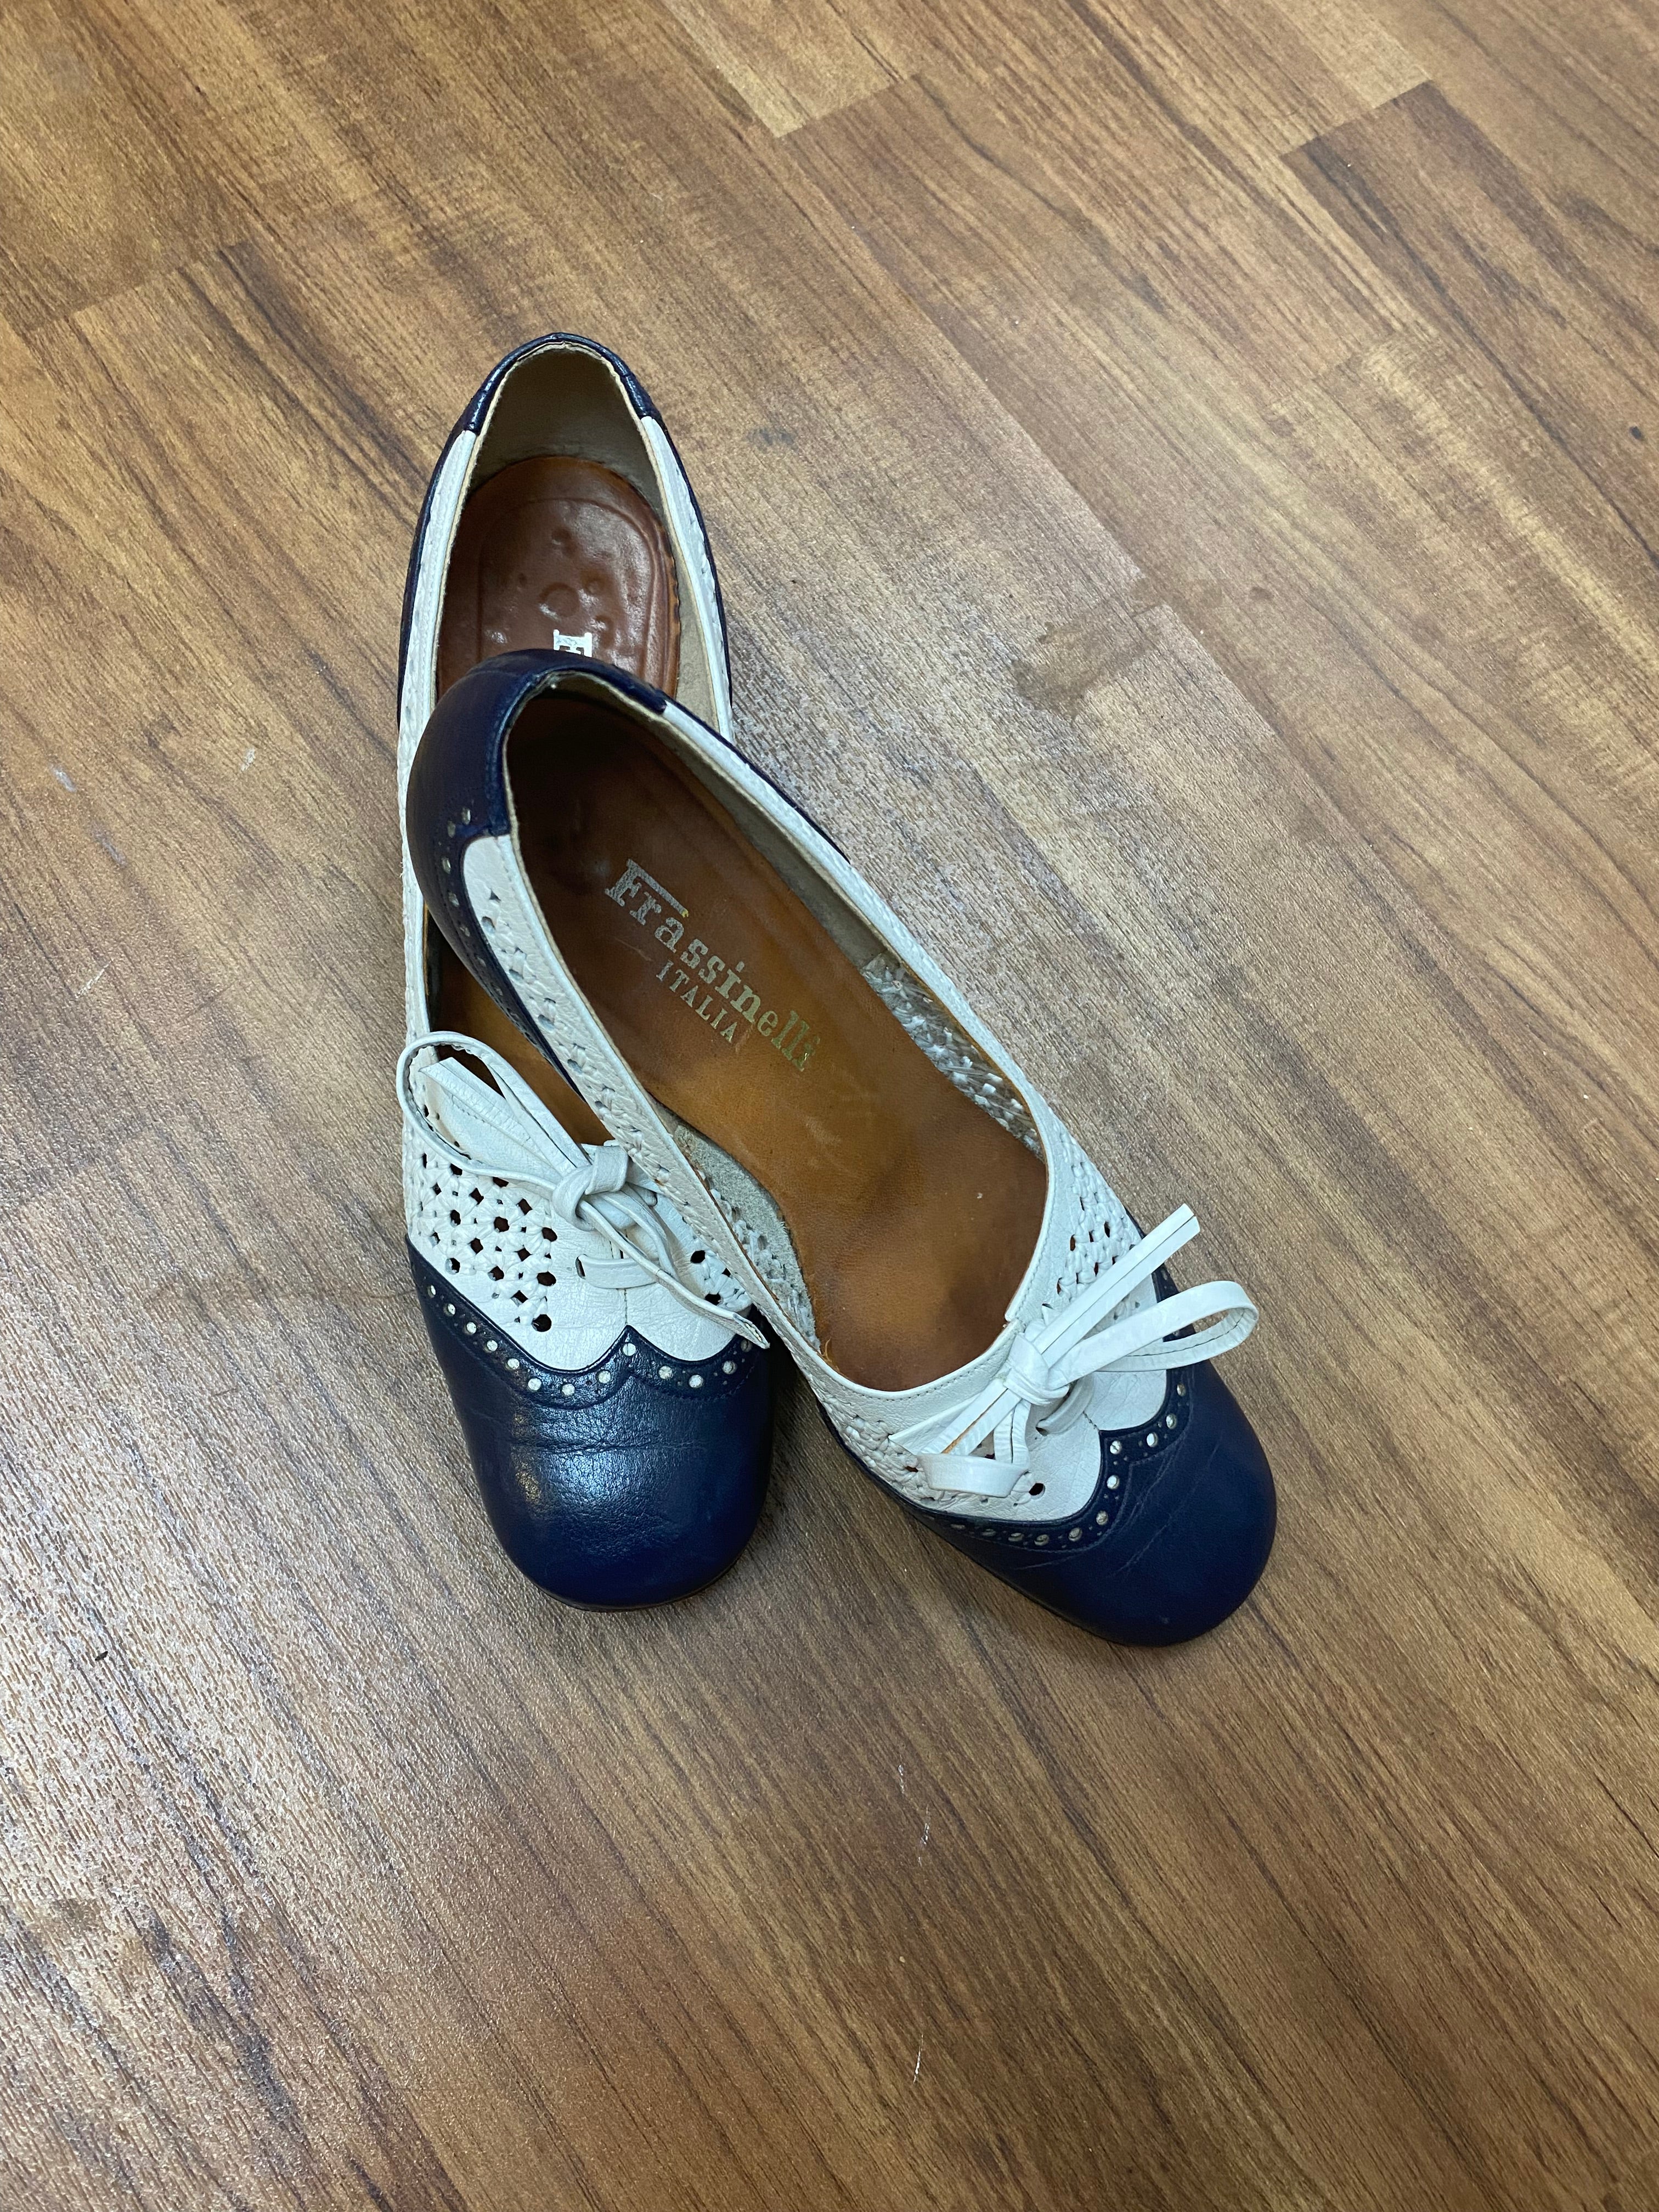 40er, 50er Jahre Vintage Damenschuh, Schuhe mit Blockabsatz, Blau Weiß